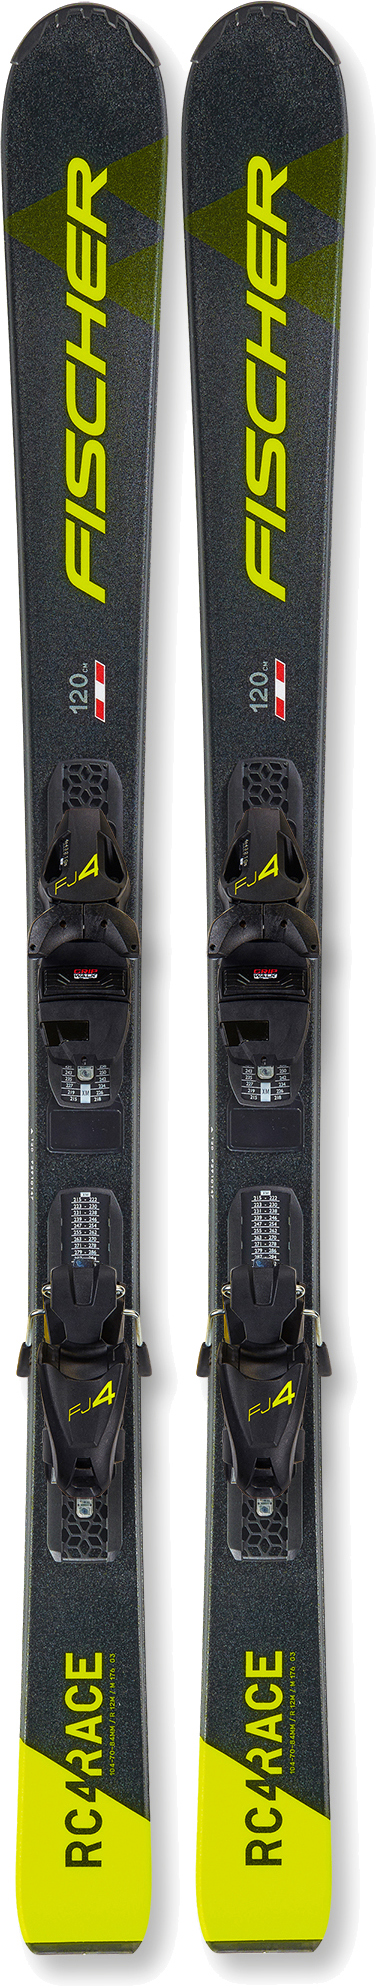 Лыжи для подготовленного склона Fischer RC4 Race Slr Jr (130-150) + FJ7 AC SLR 140 см